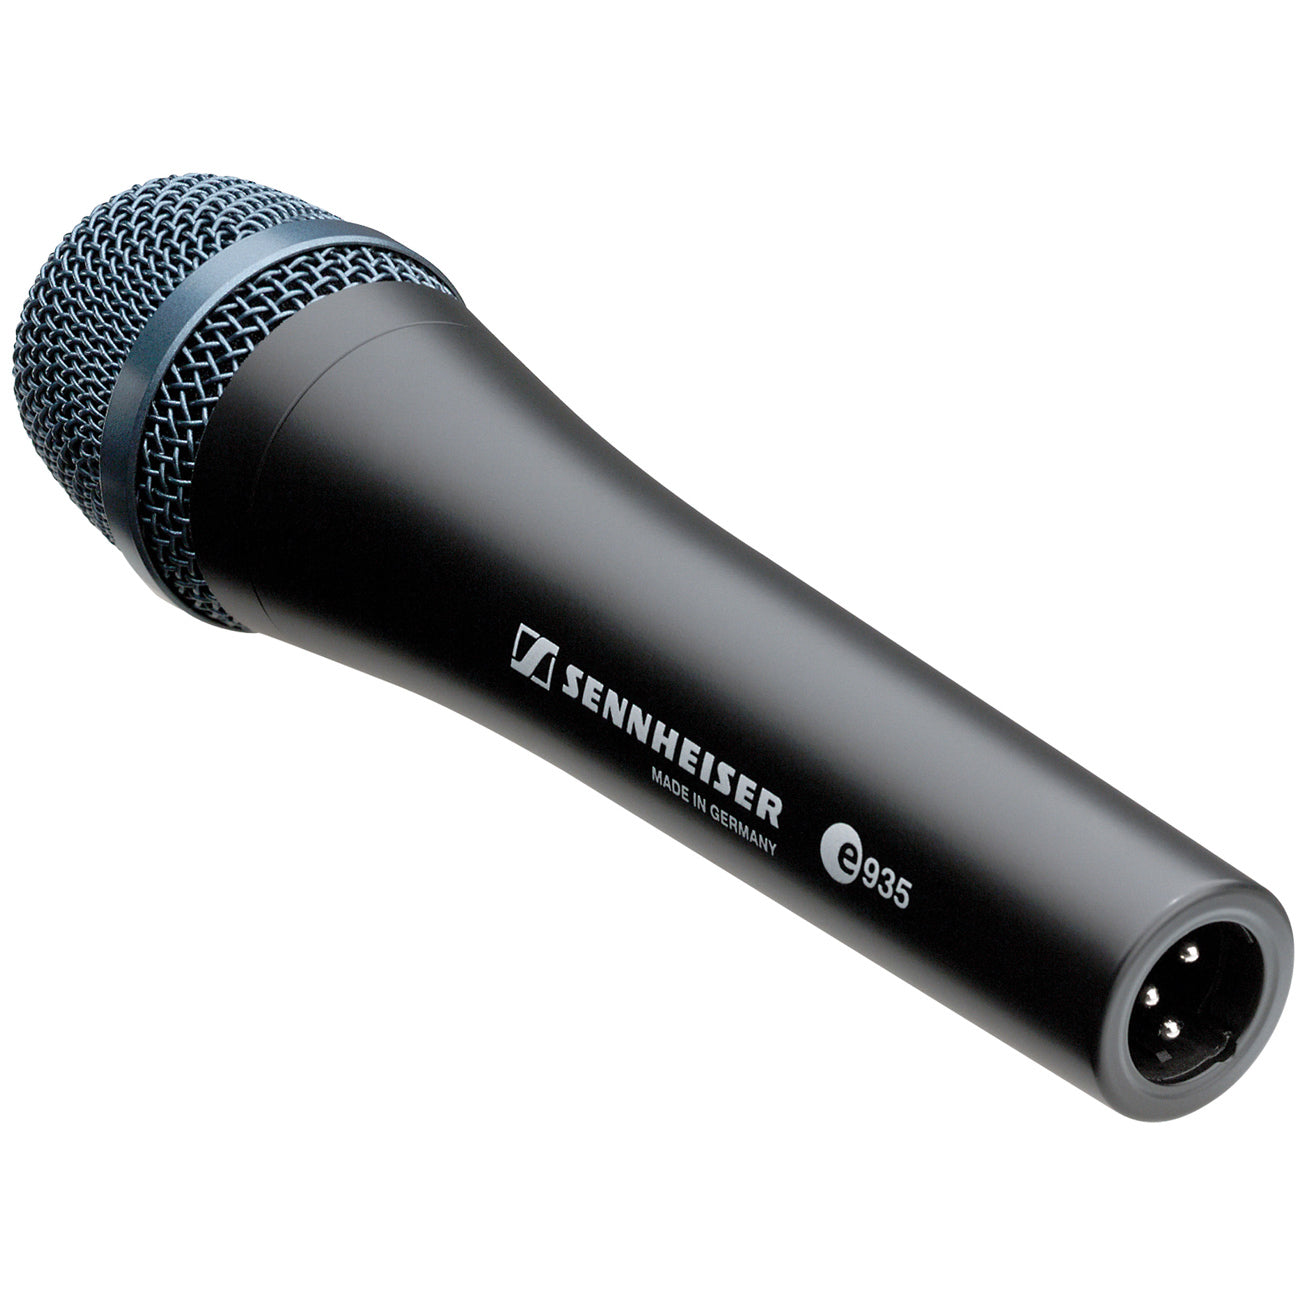 E935 Sennheiser Dynamic Vocal Microphone